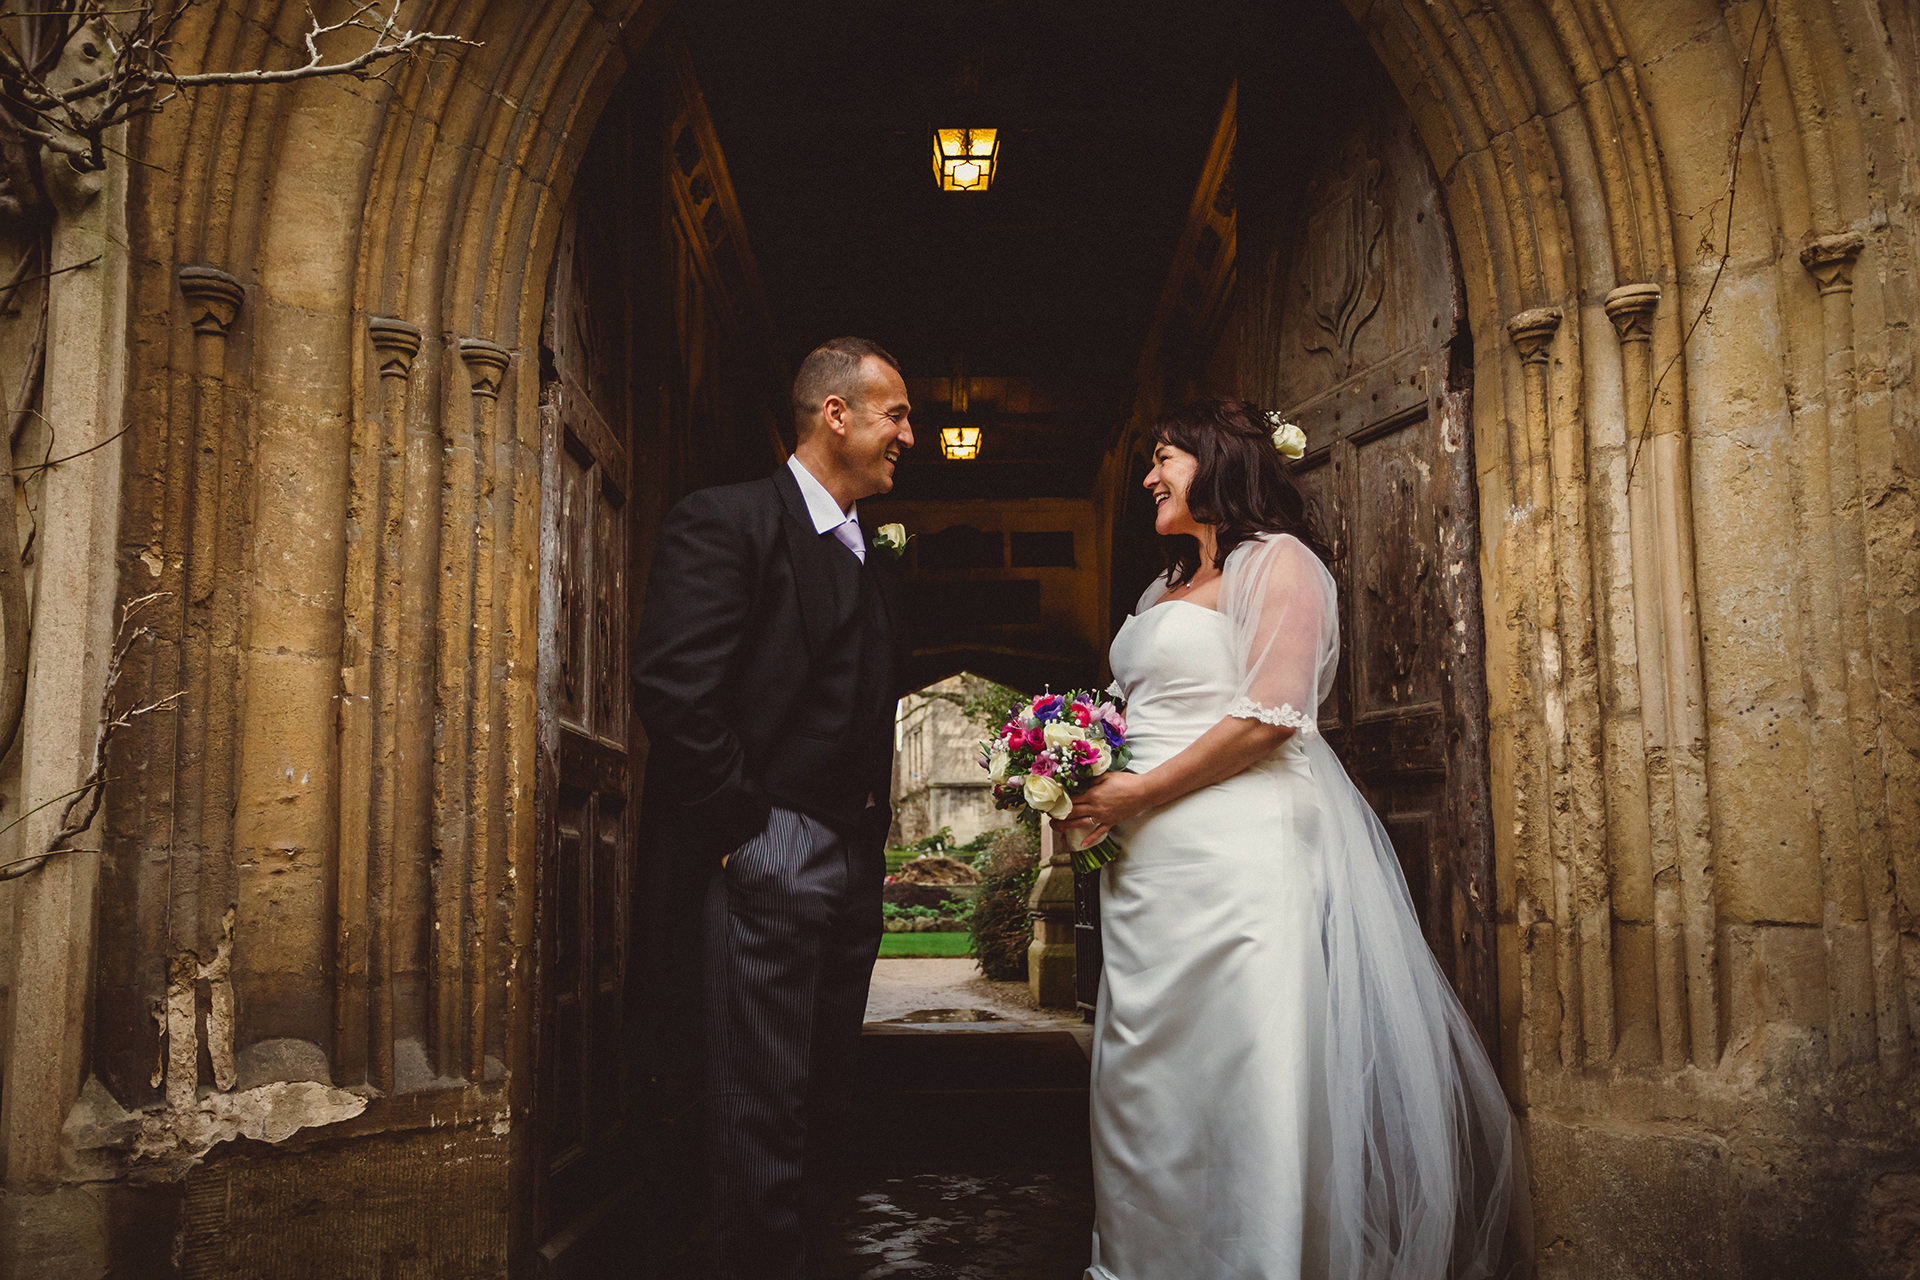 Wedding Photographer Oxford Oxfordshire testimonial